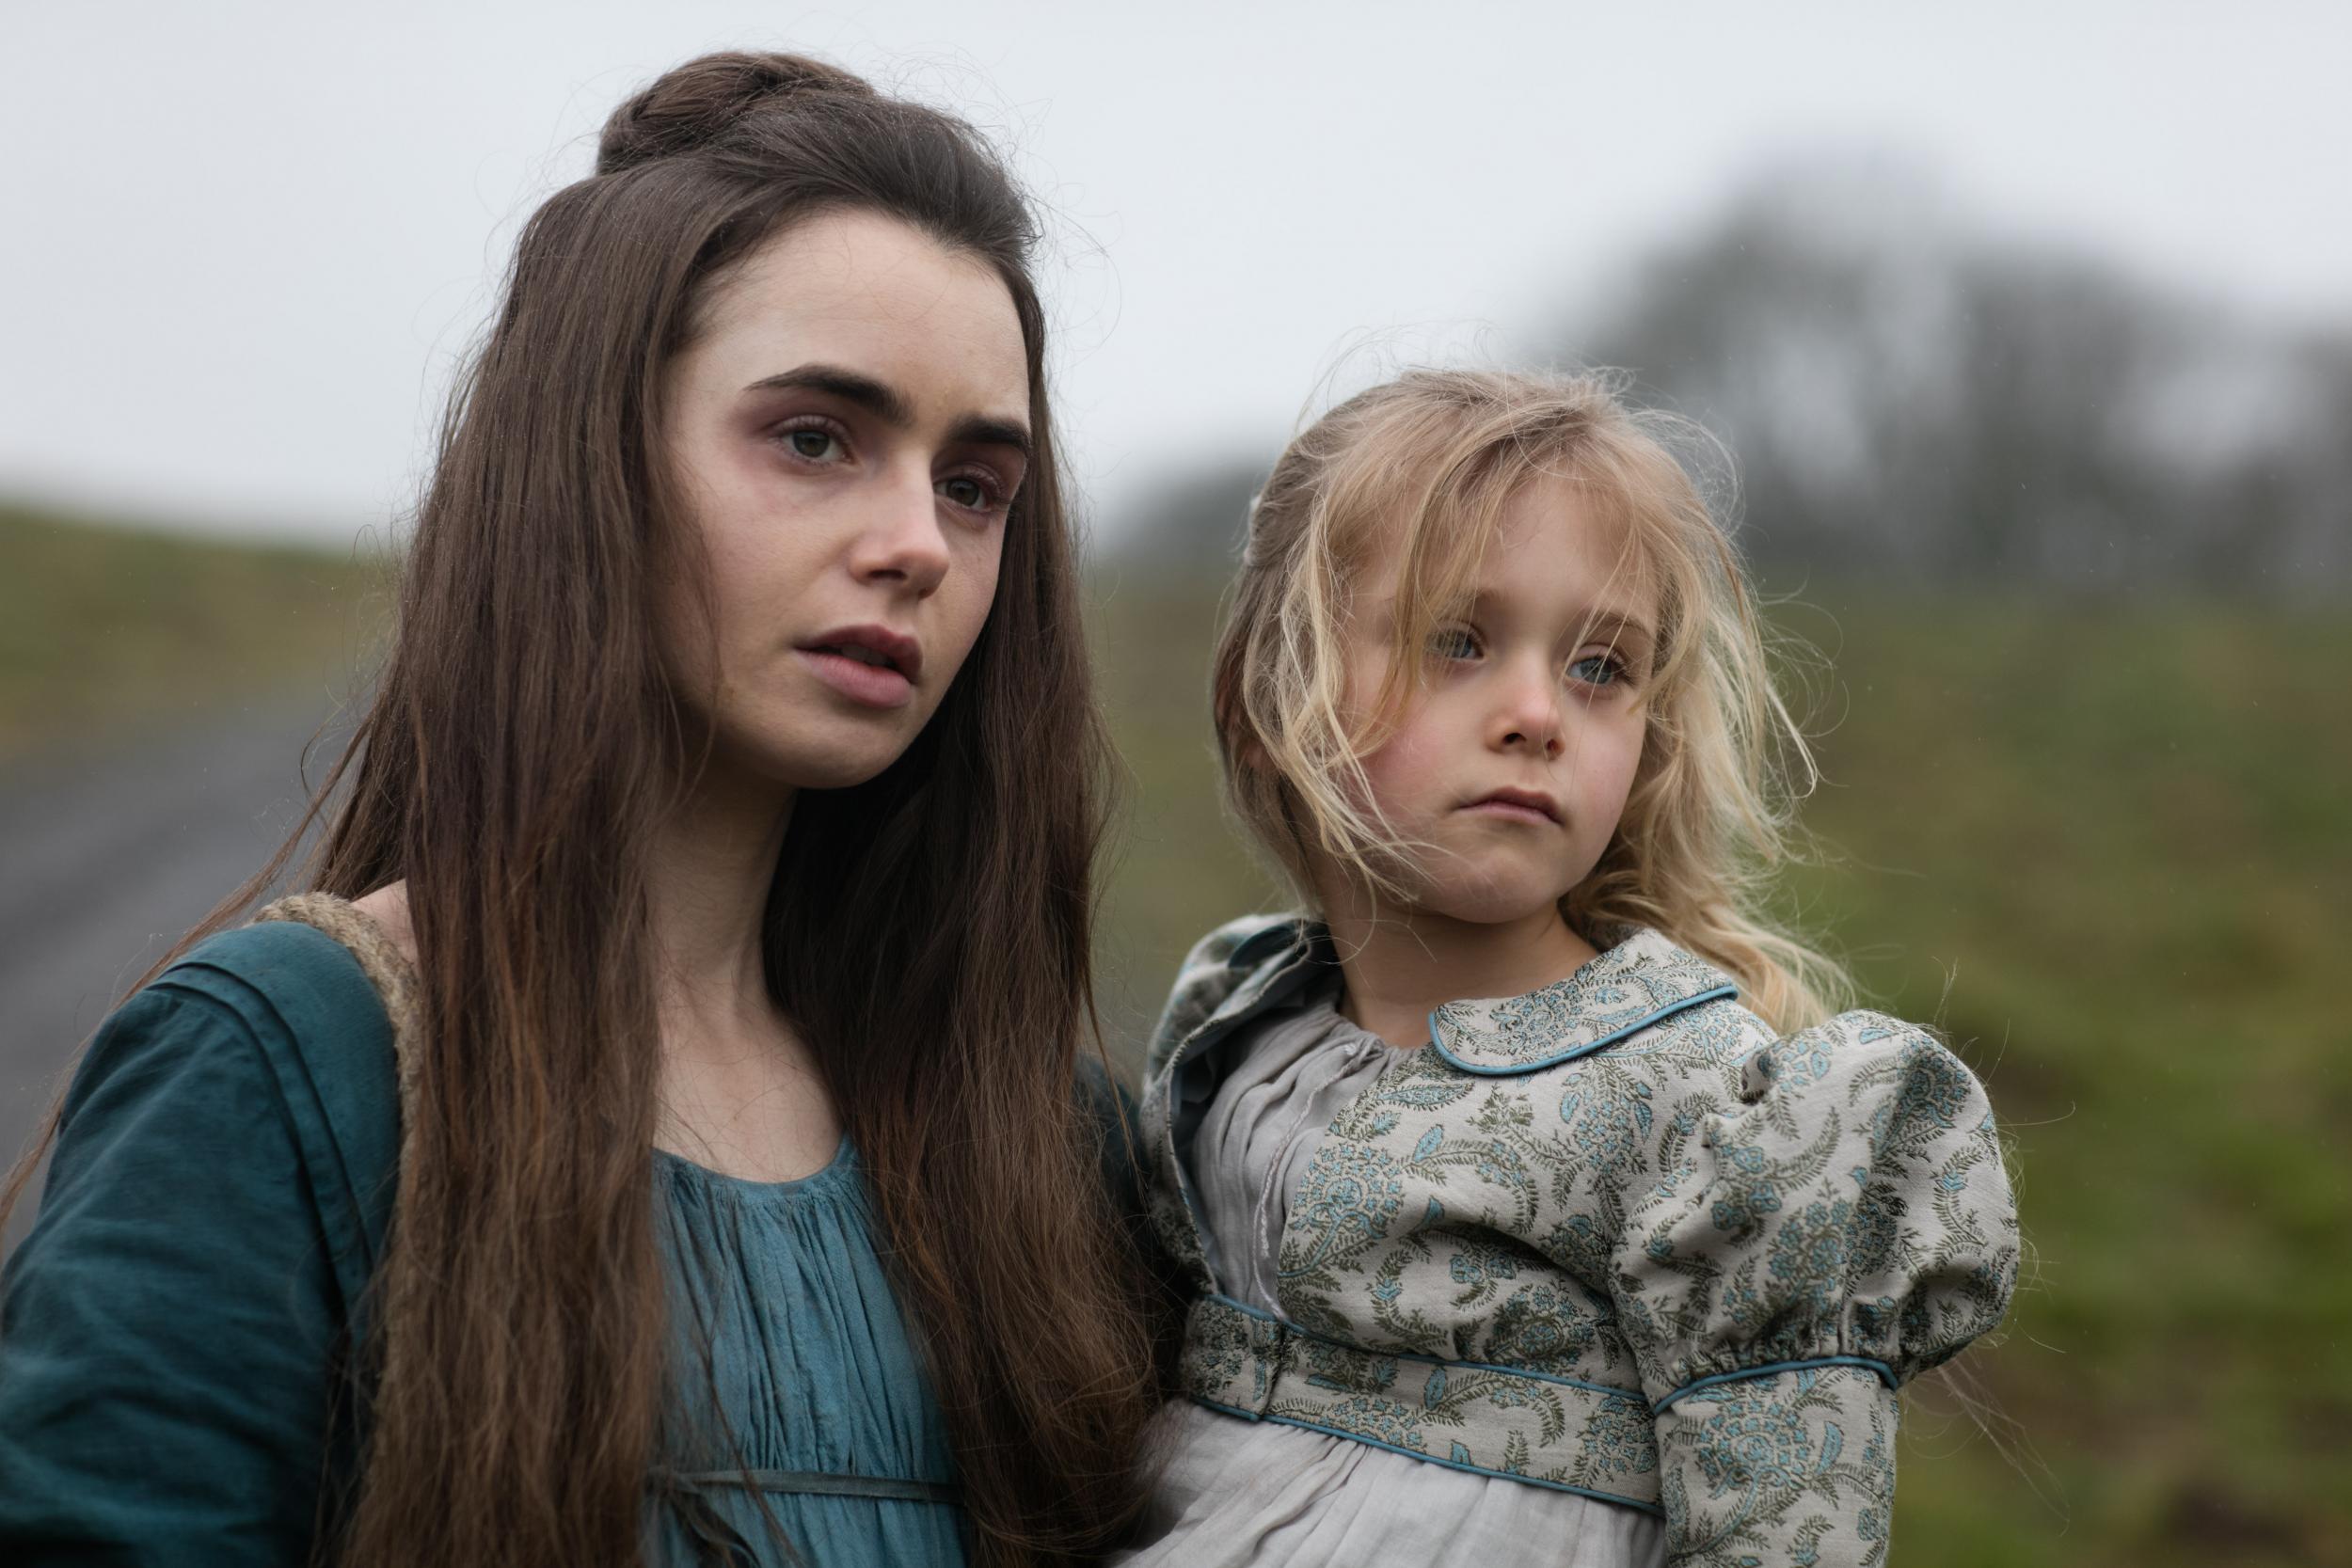 Les Misérables review, episode two Lily Collins plays the tragic